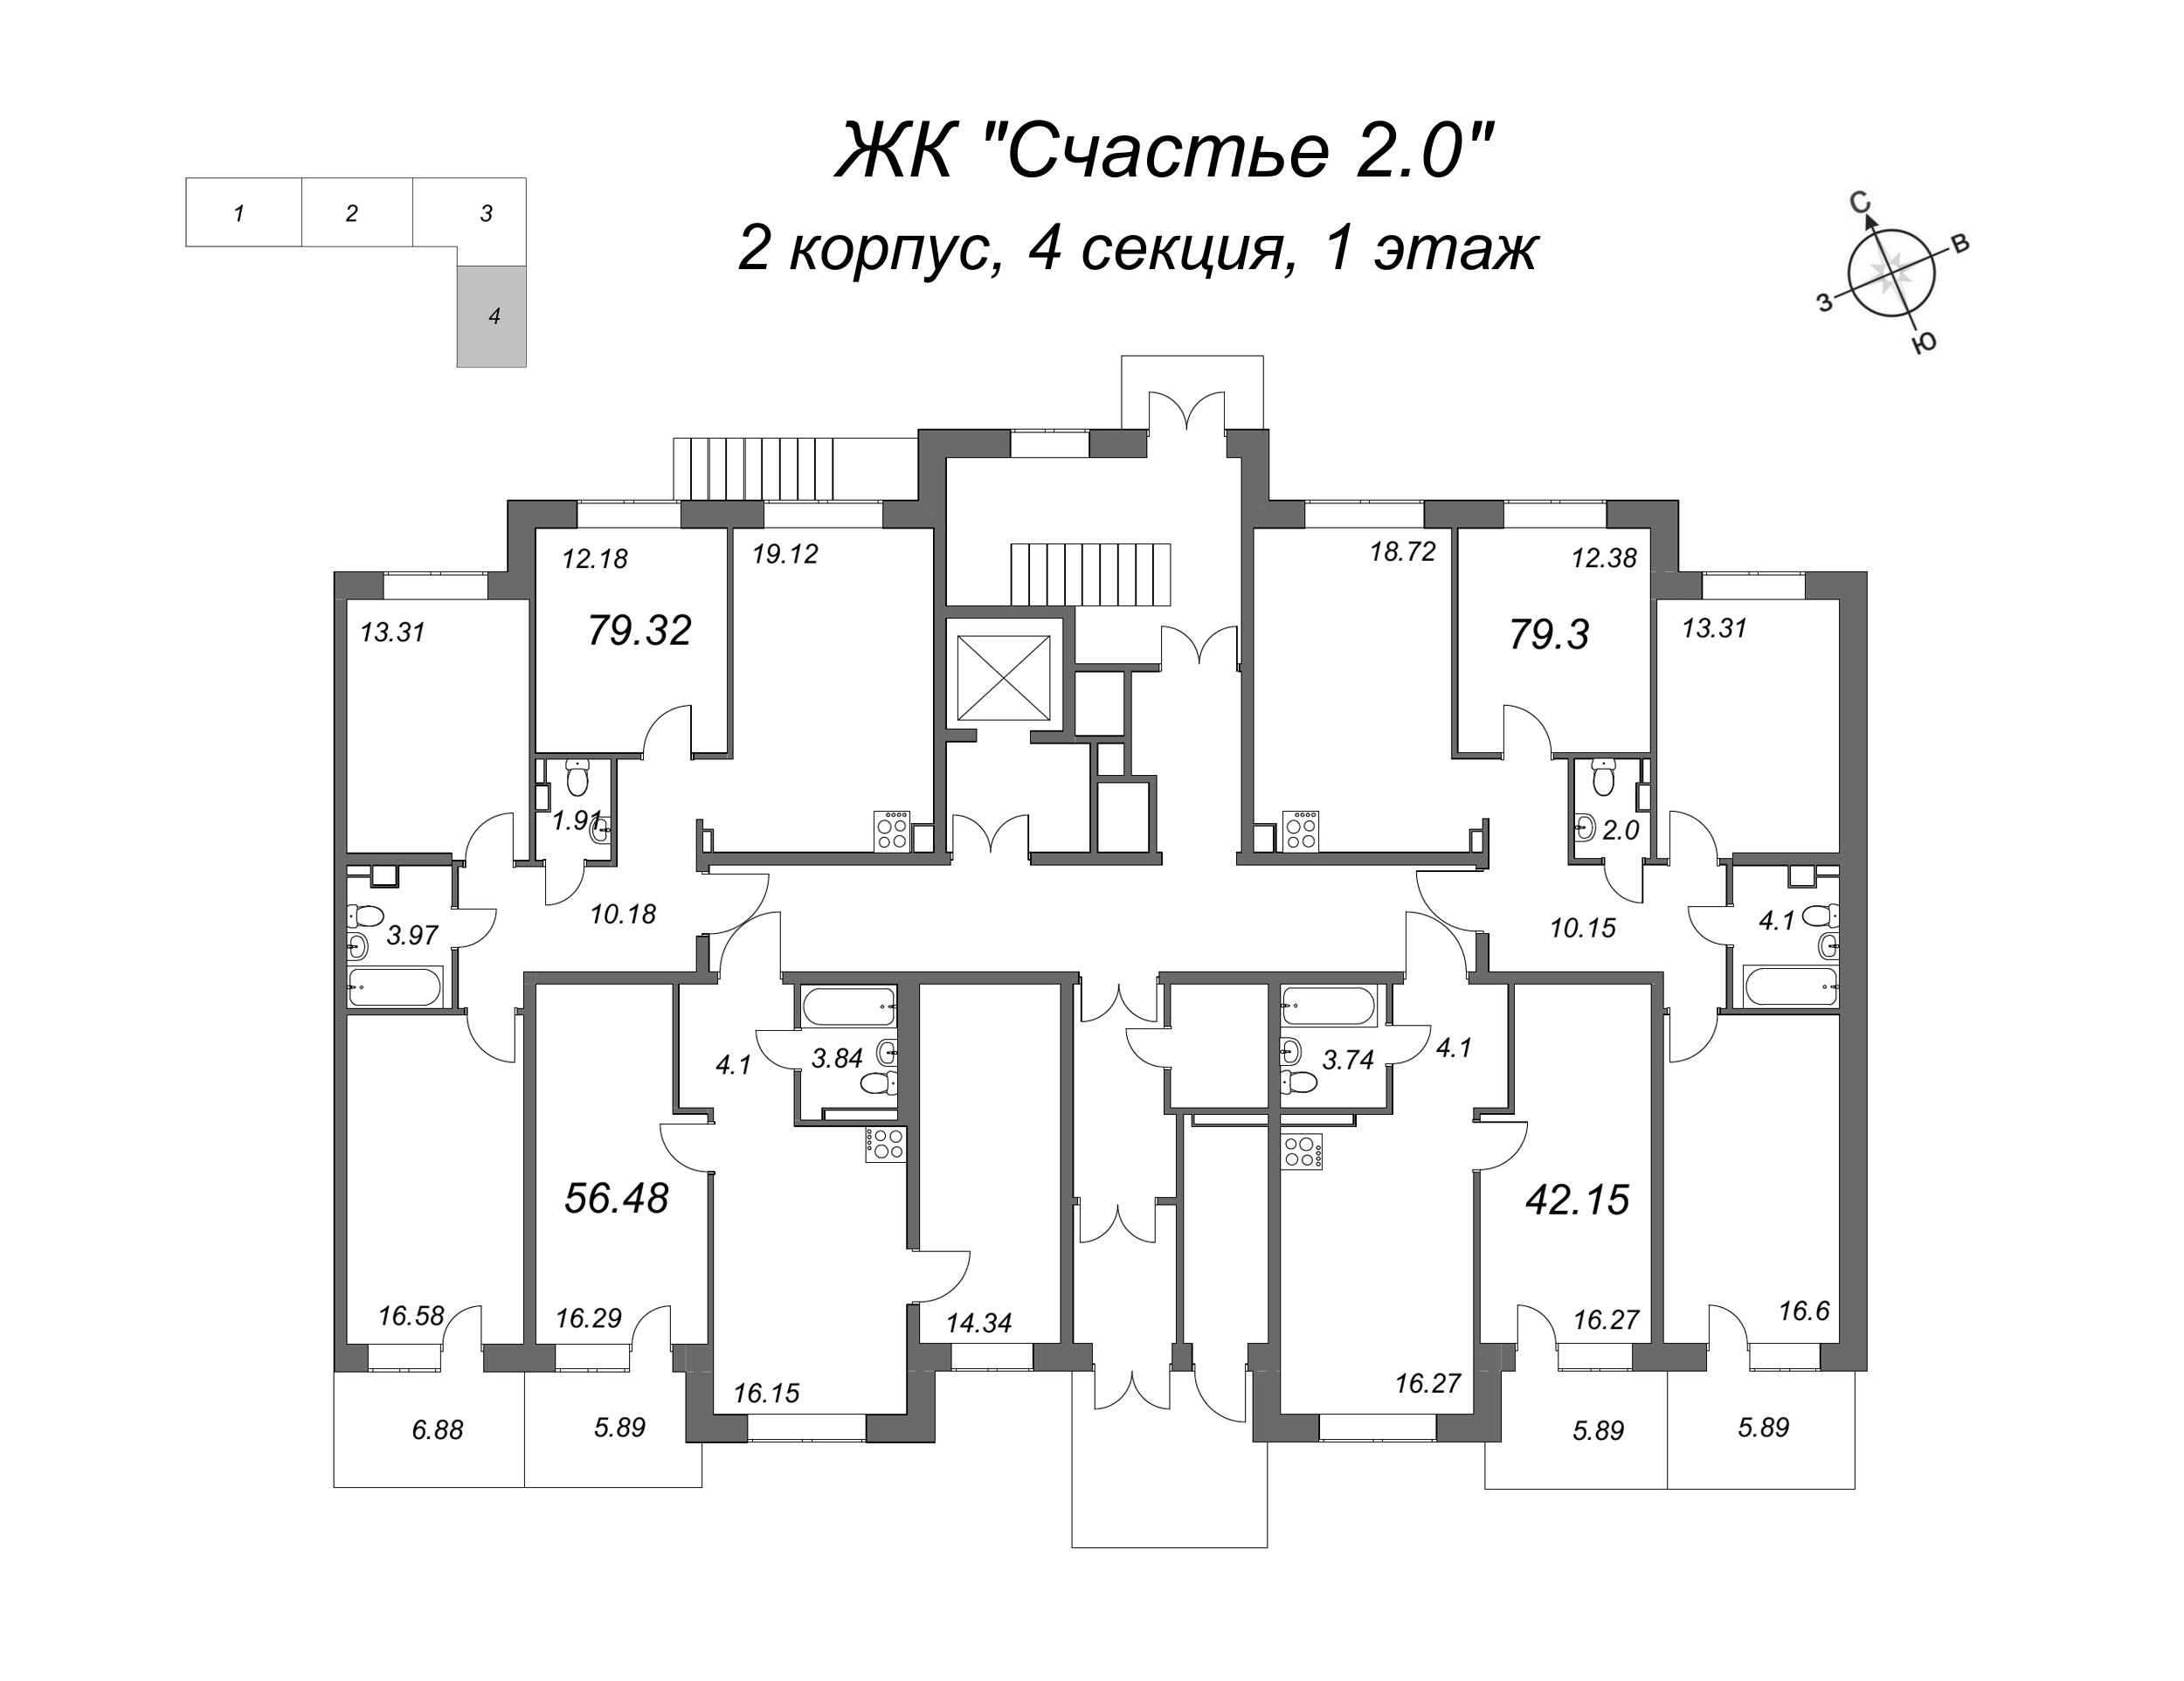 3-комнатная квартира, 80.8 м² в ЖК "Счастье 2.0" - планировка этажа